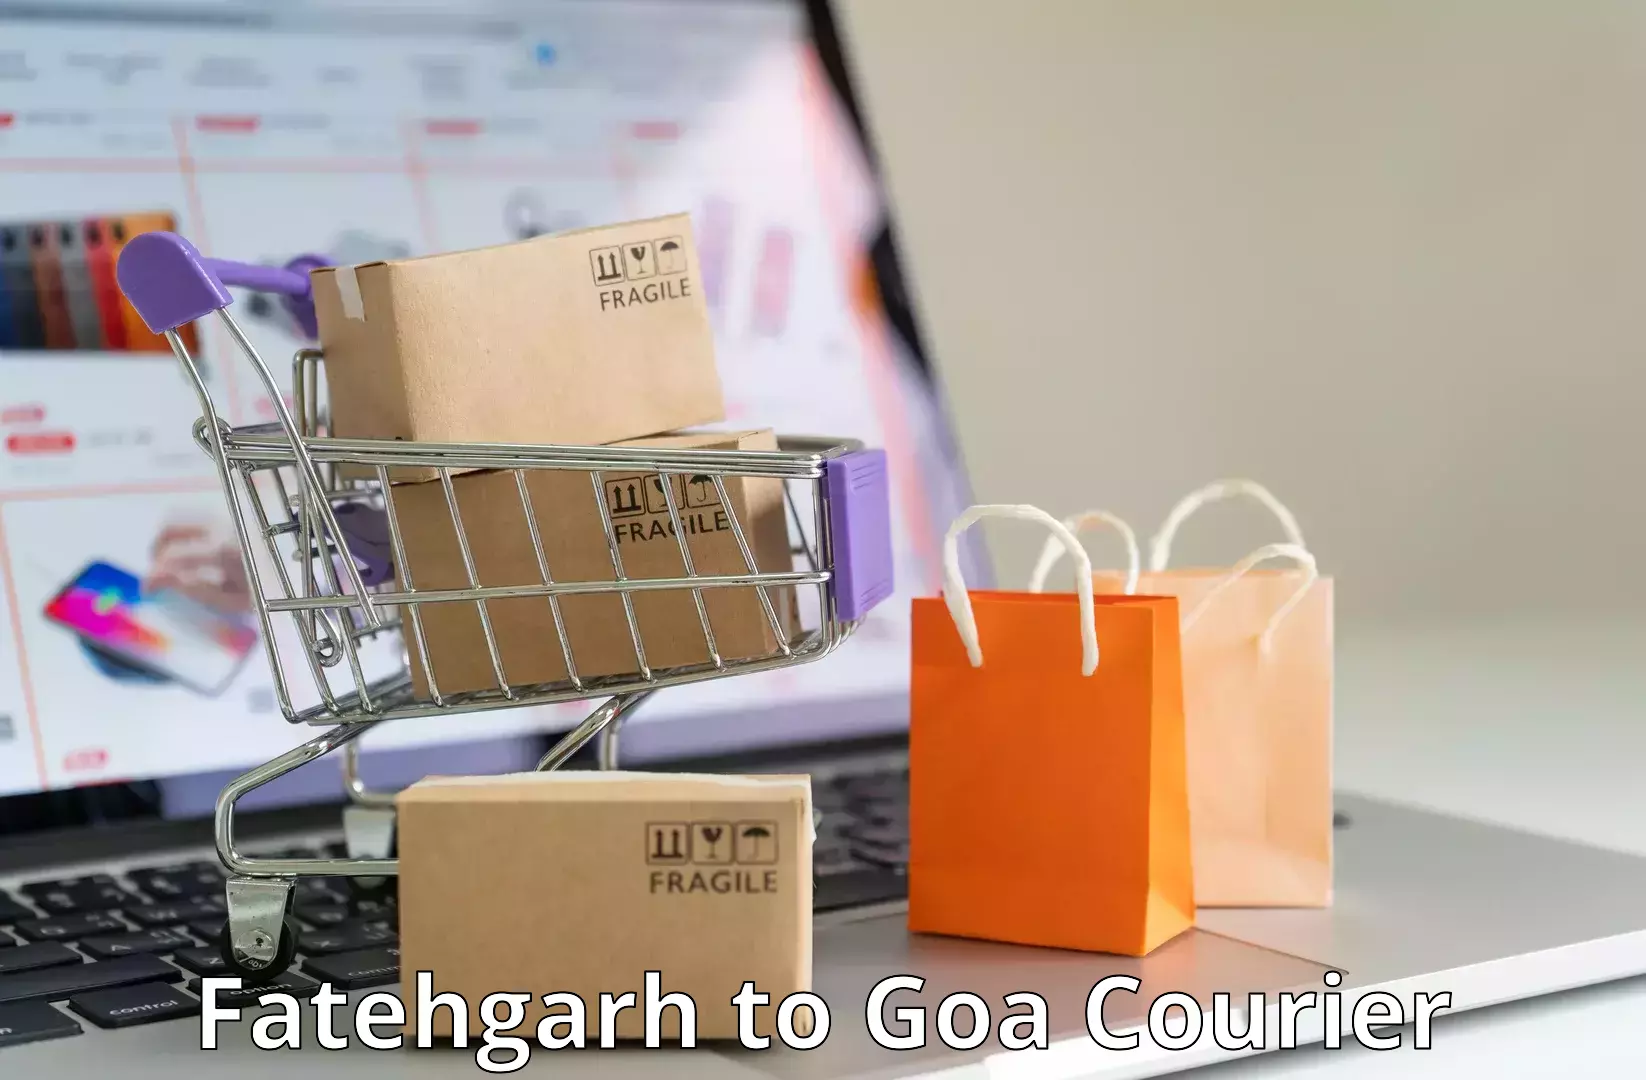 Discounted shipping Fatehgarh to IIT Goa